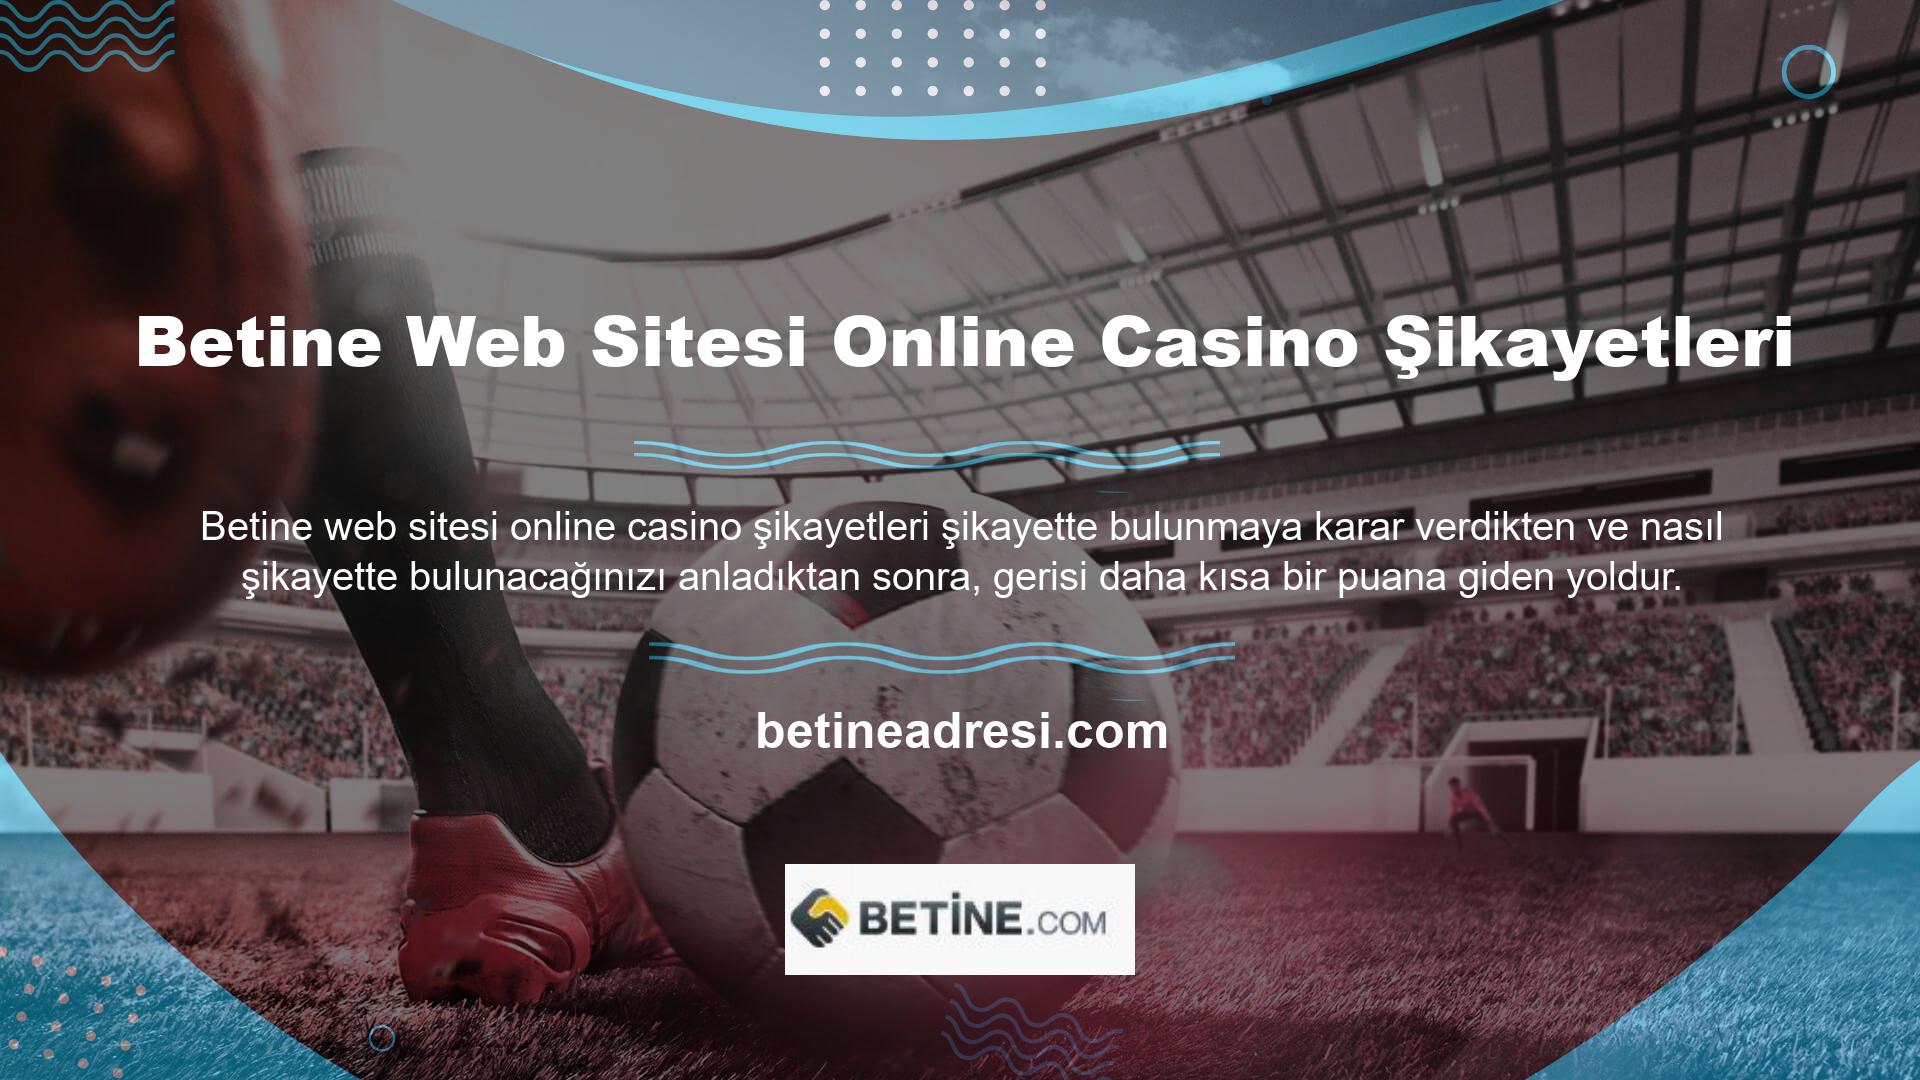 Çevrimiçi casino şikayetleri için ilk irtibat noktası her zaman web sitesinin destek hattı veya şikayet hattı olmalıdır